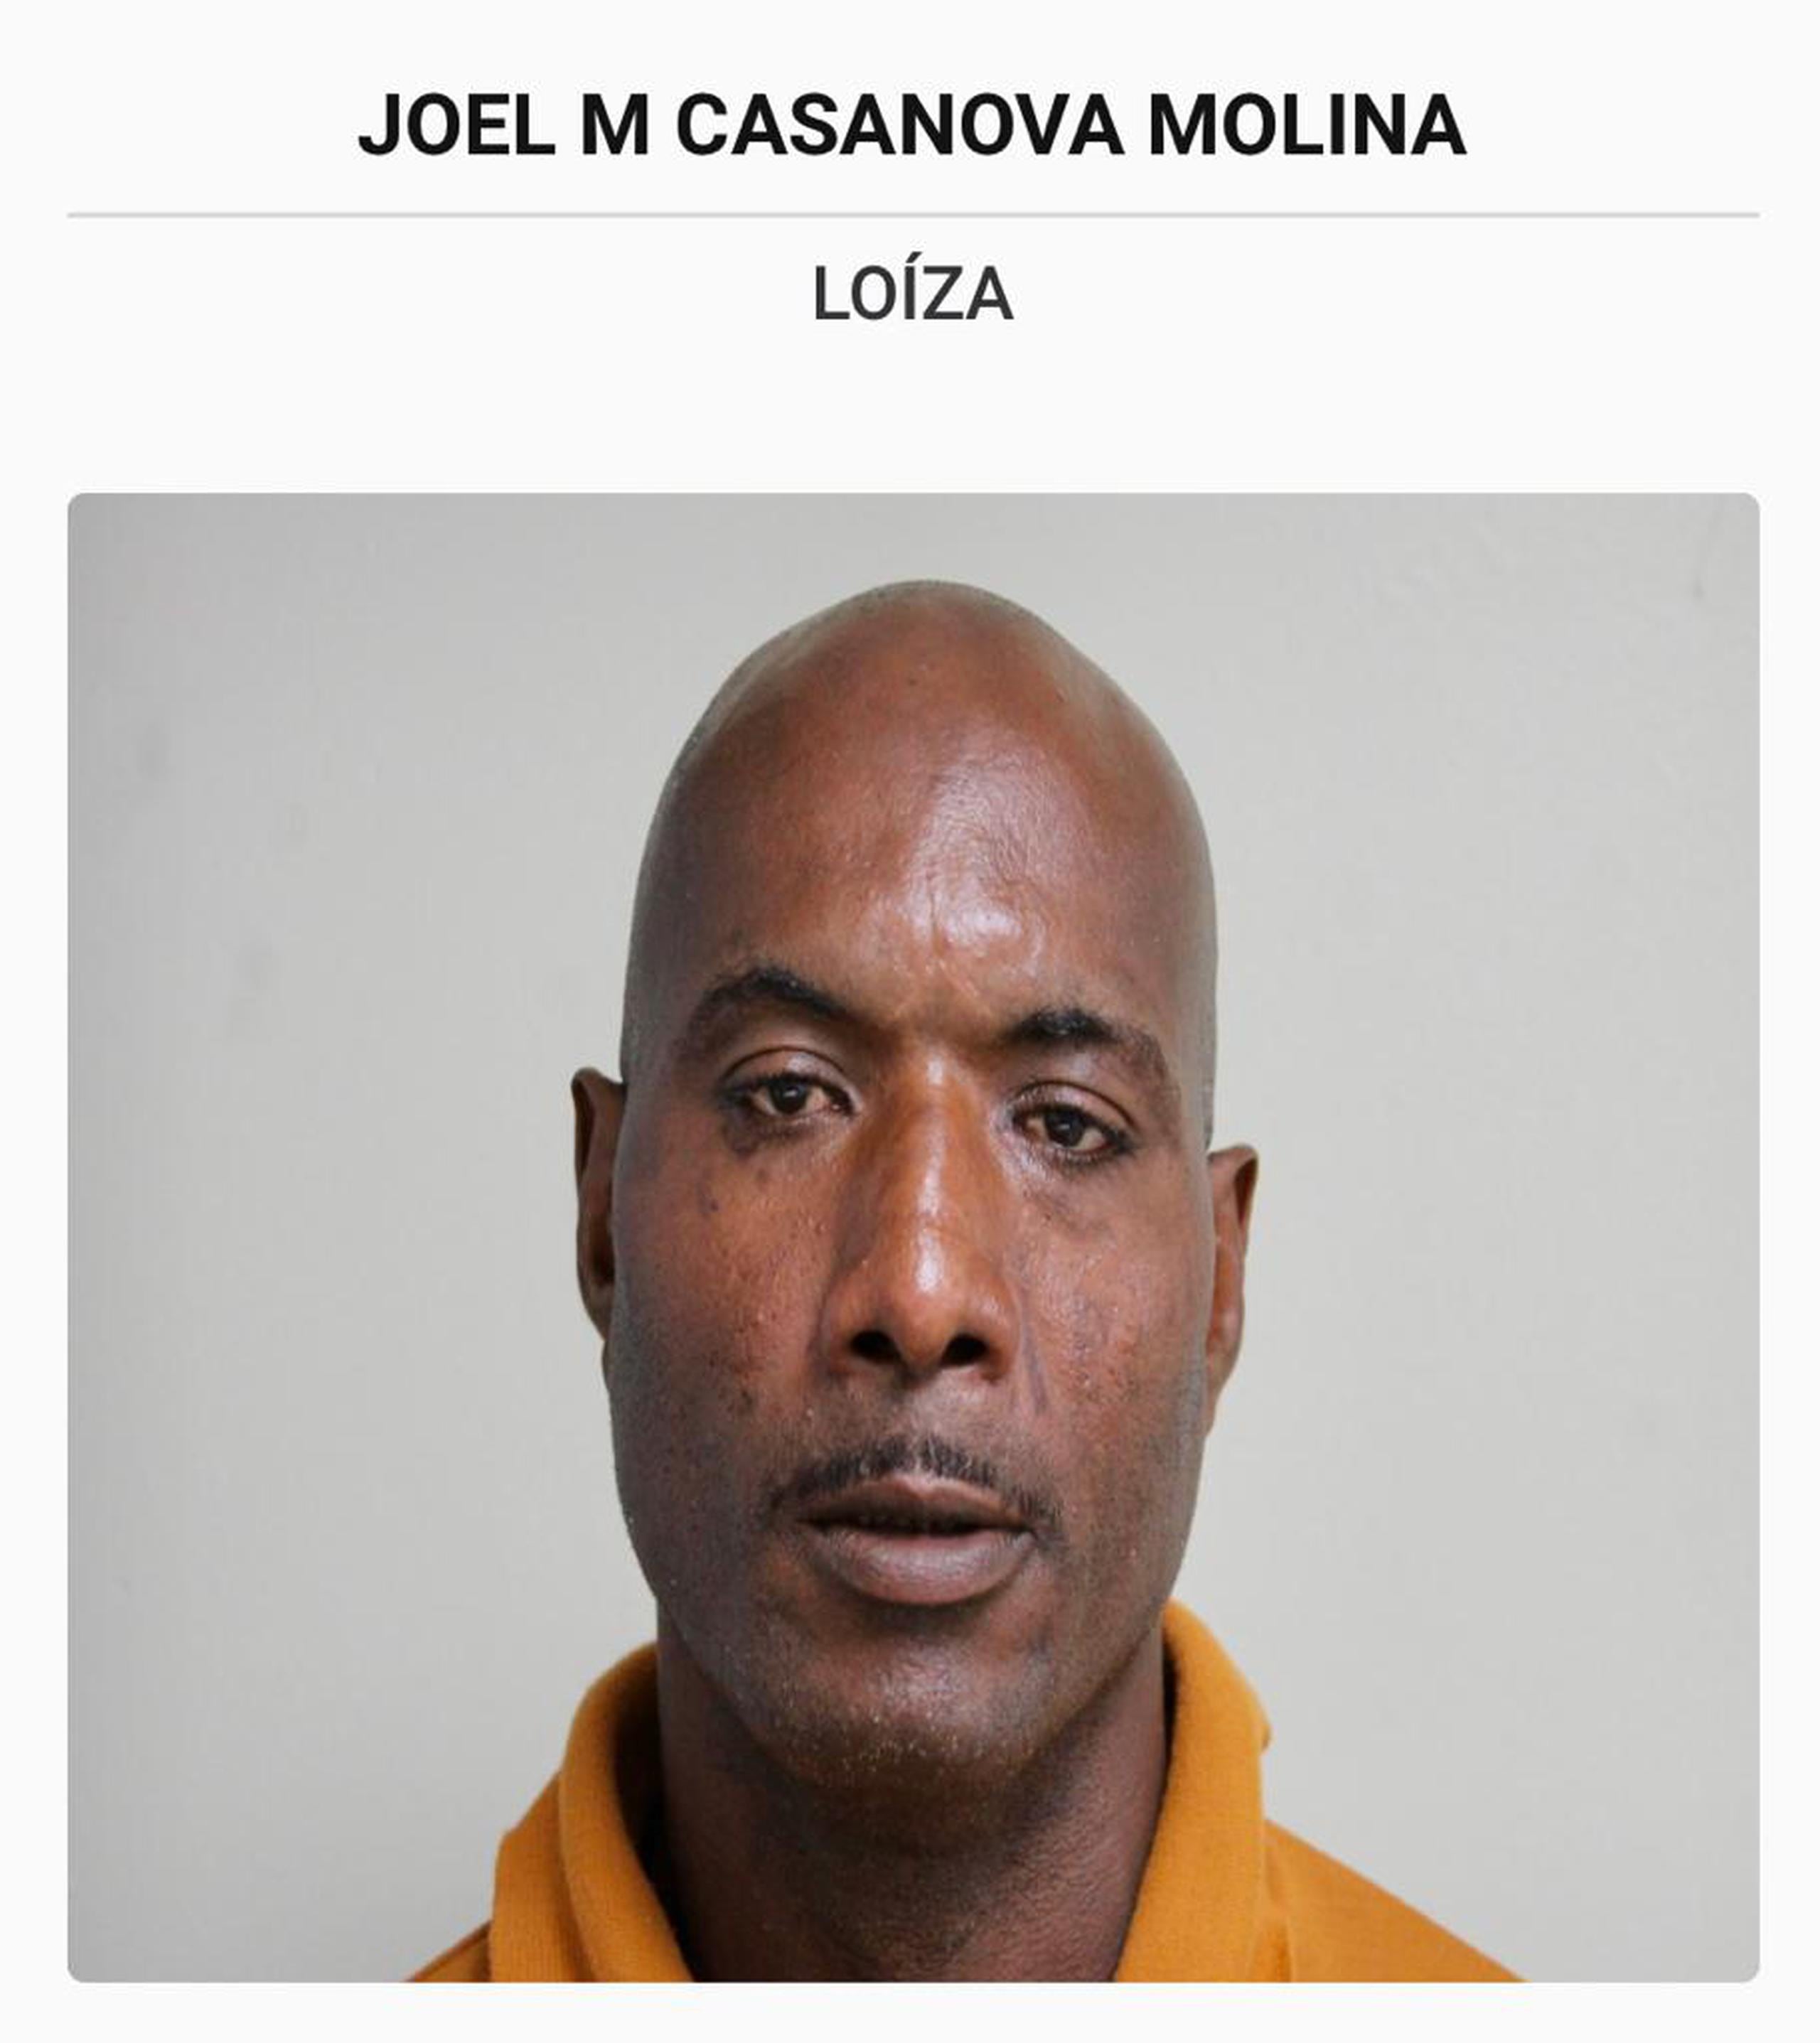 Joel M. Casanova Molina enfrenta cargos por exposiciones deshonestas y acecho.